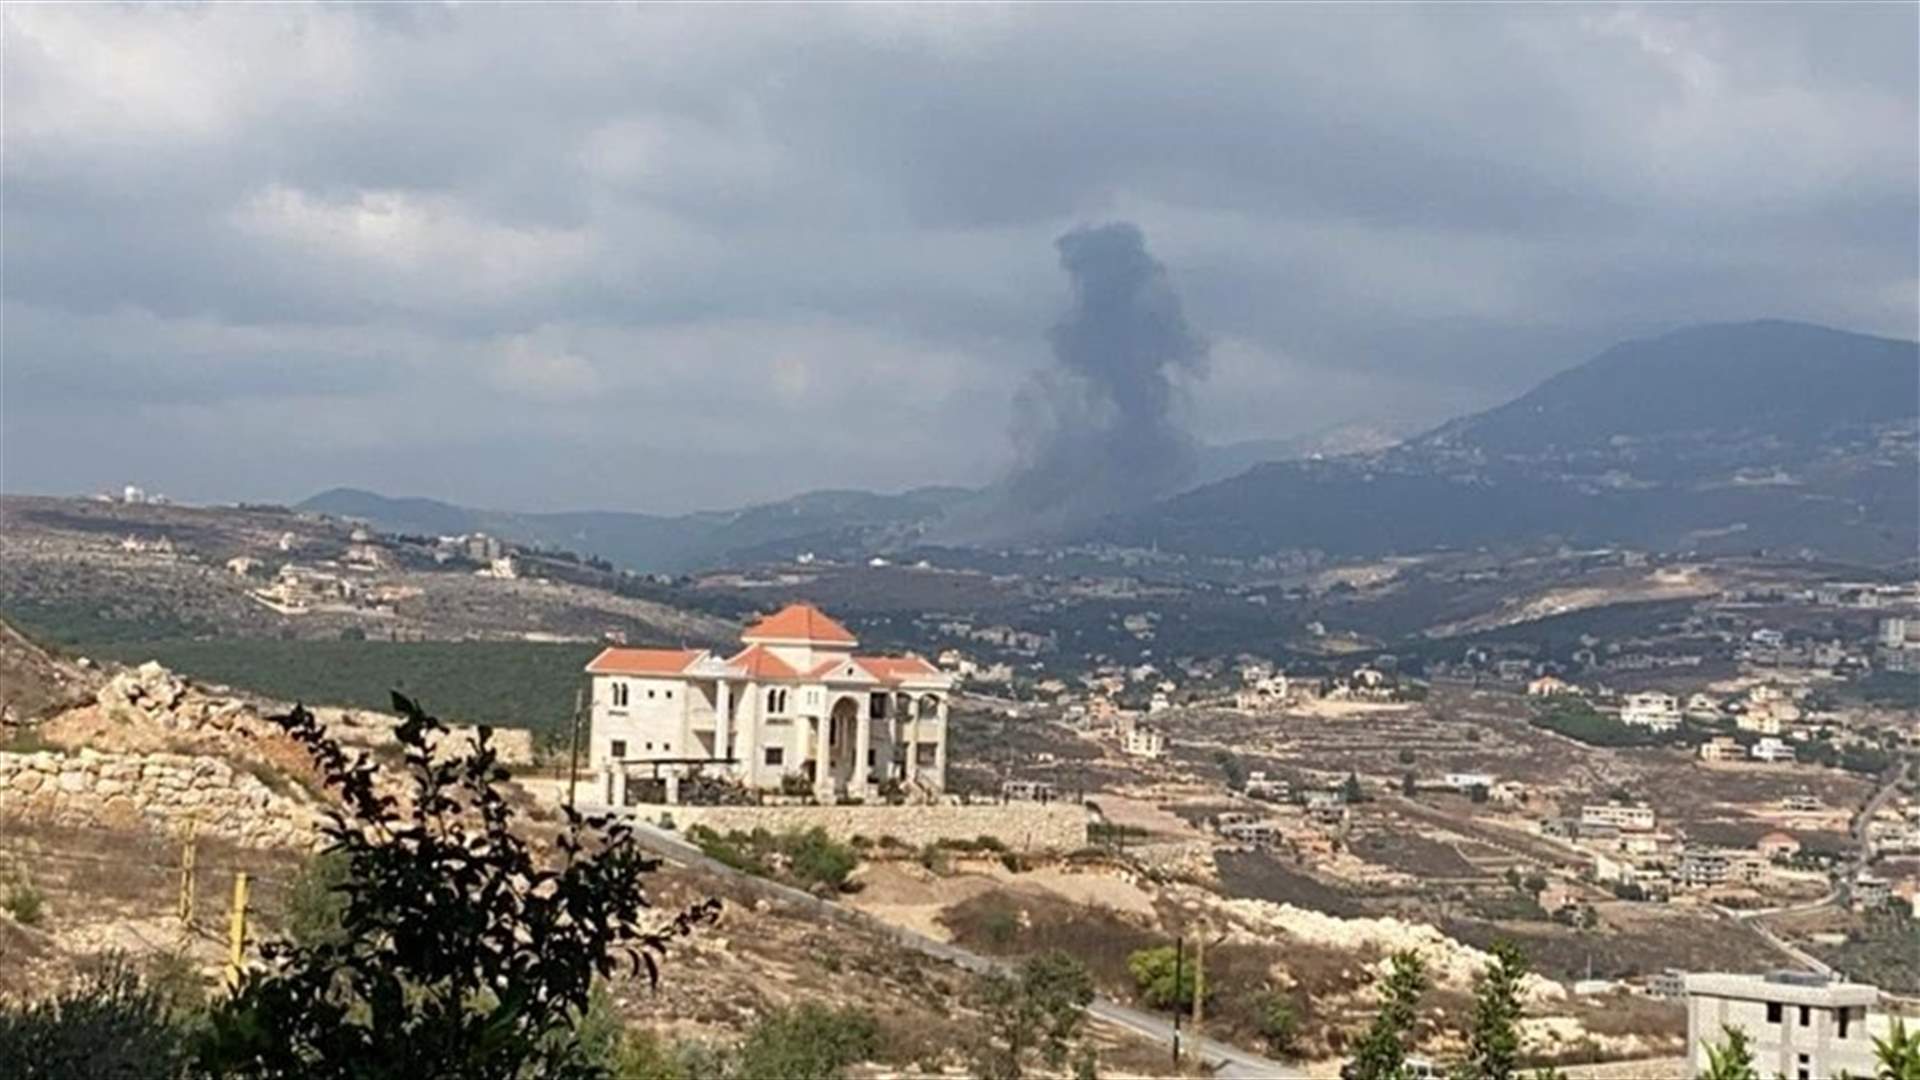 Photos and videos of Ain Qana explosion